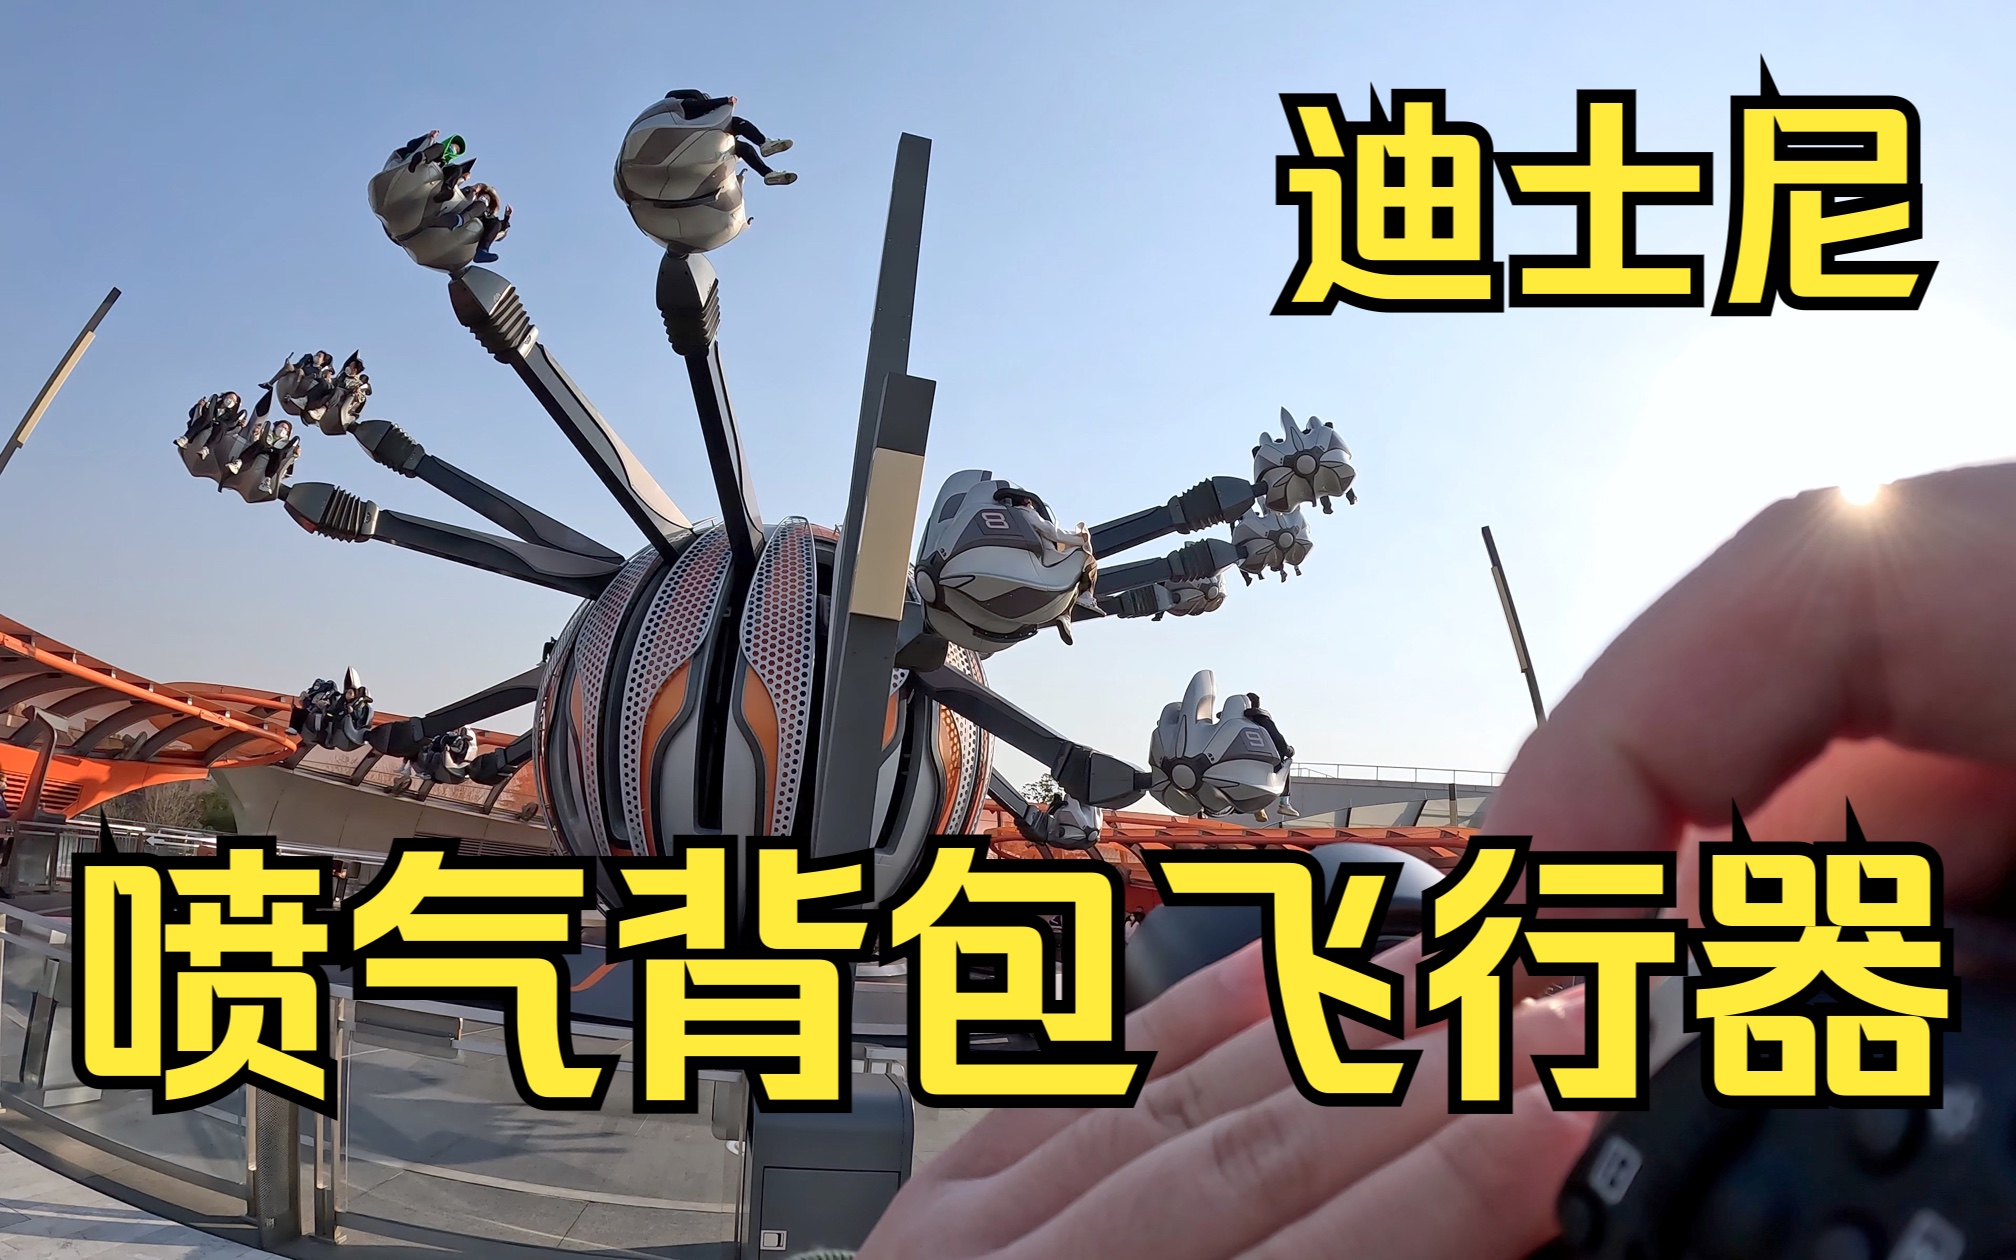 【迪士尼】喷气背包飞行器 摄影工具人第一视角